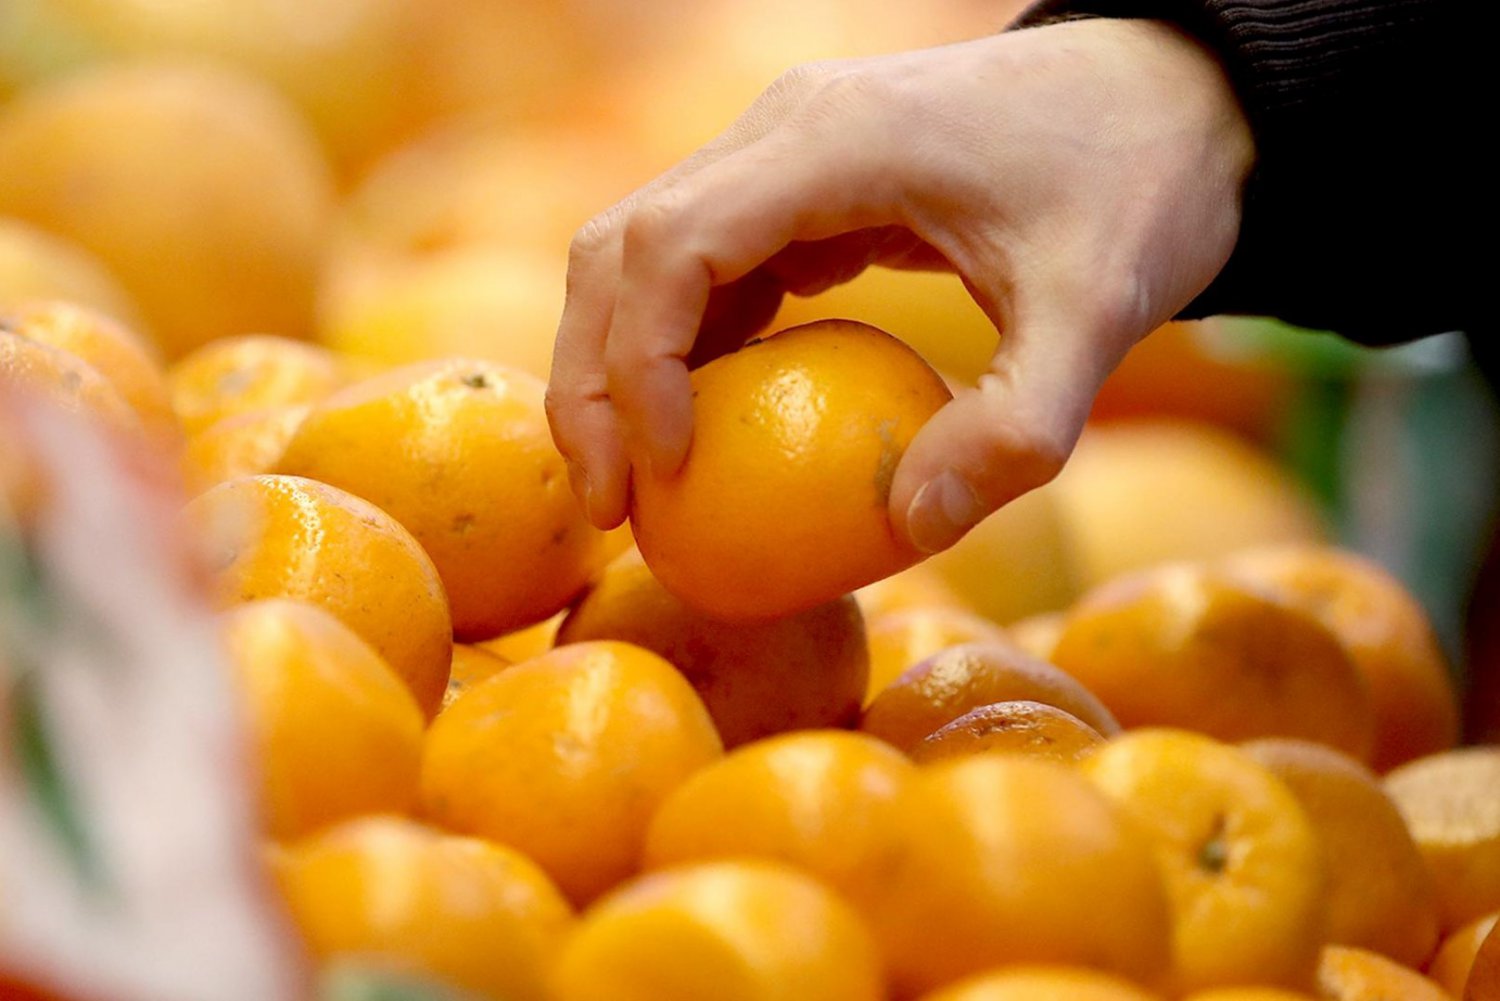 Роспотребнадзор снял с продажи 1,3 тонны фруктов и овощей